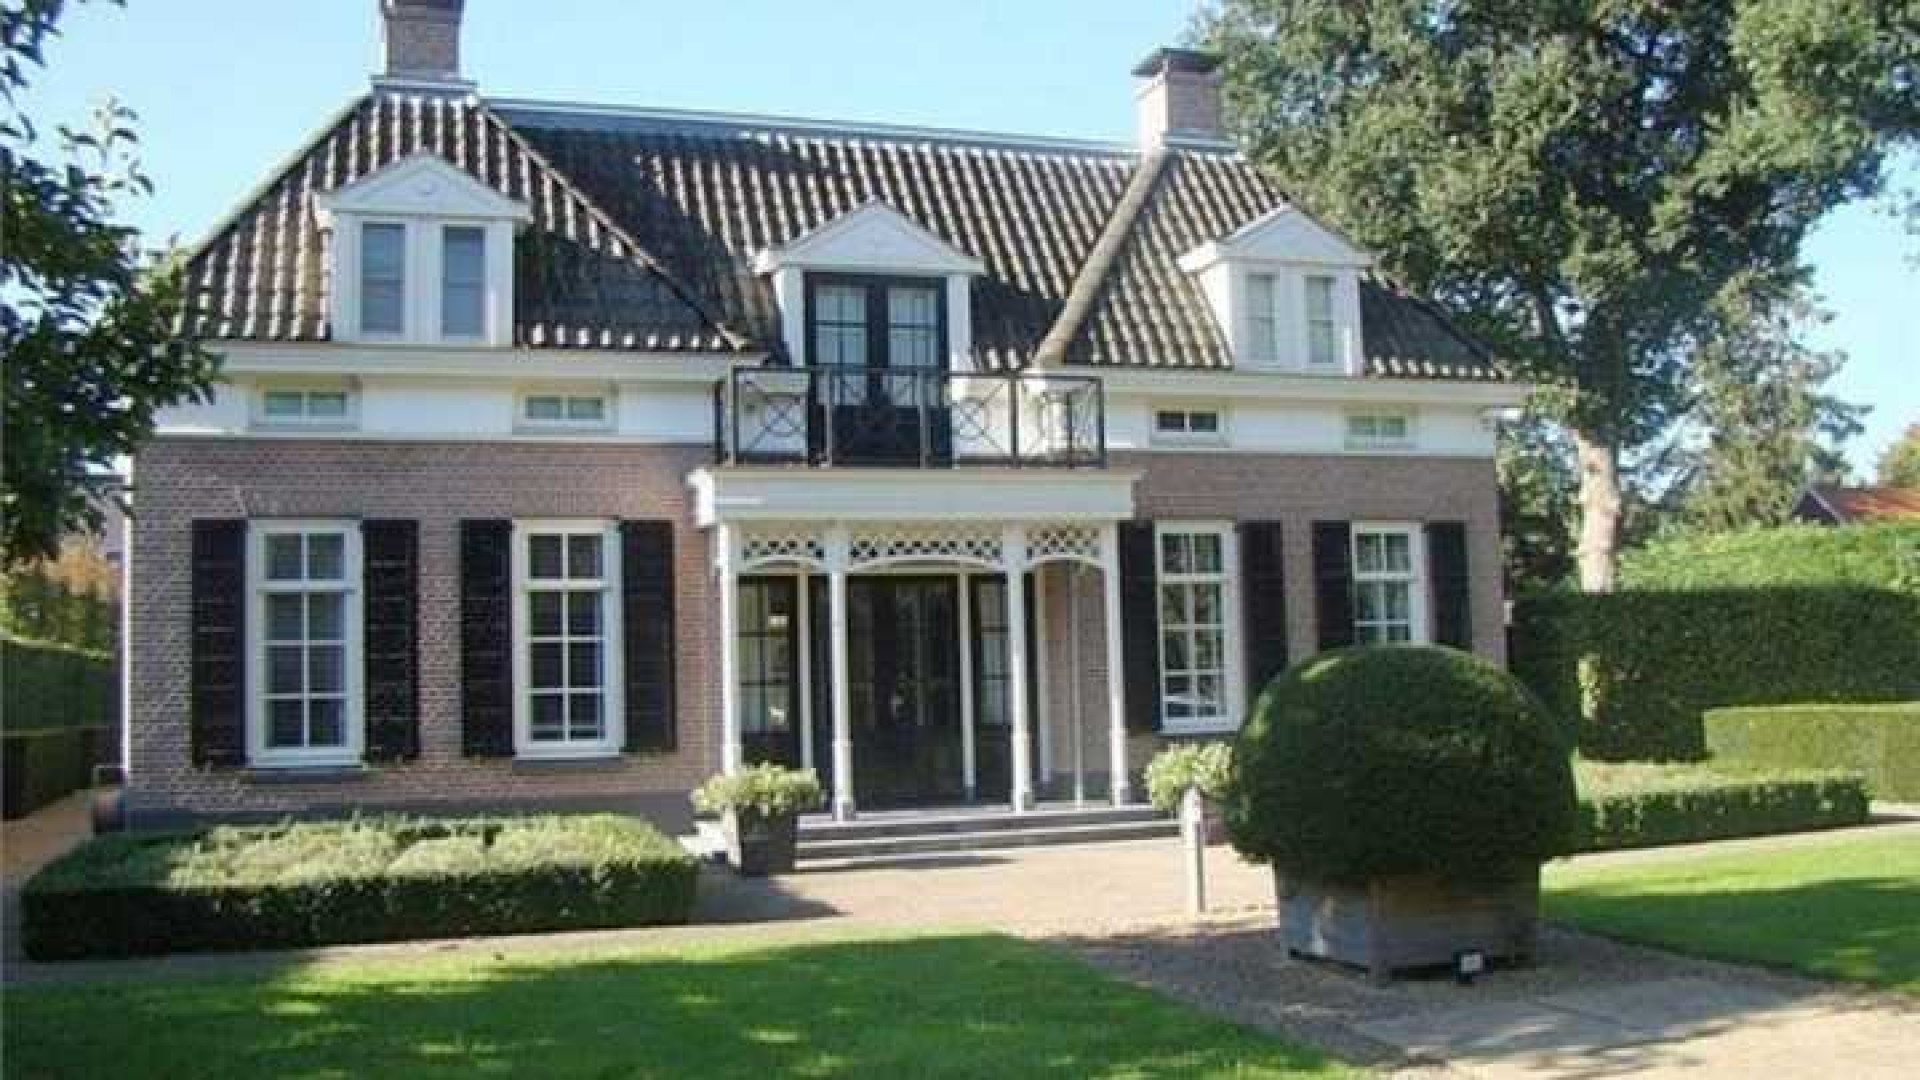 Ronald Koeman duikelt met vraagprijs van zijn luxe villa omlaag. Zie foto's 1